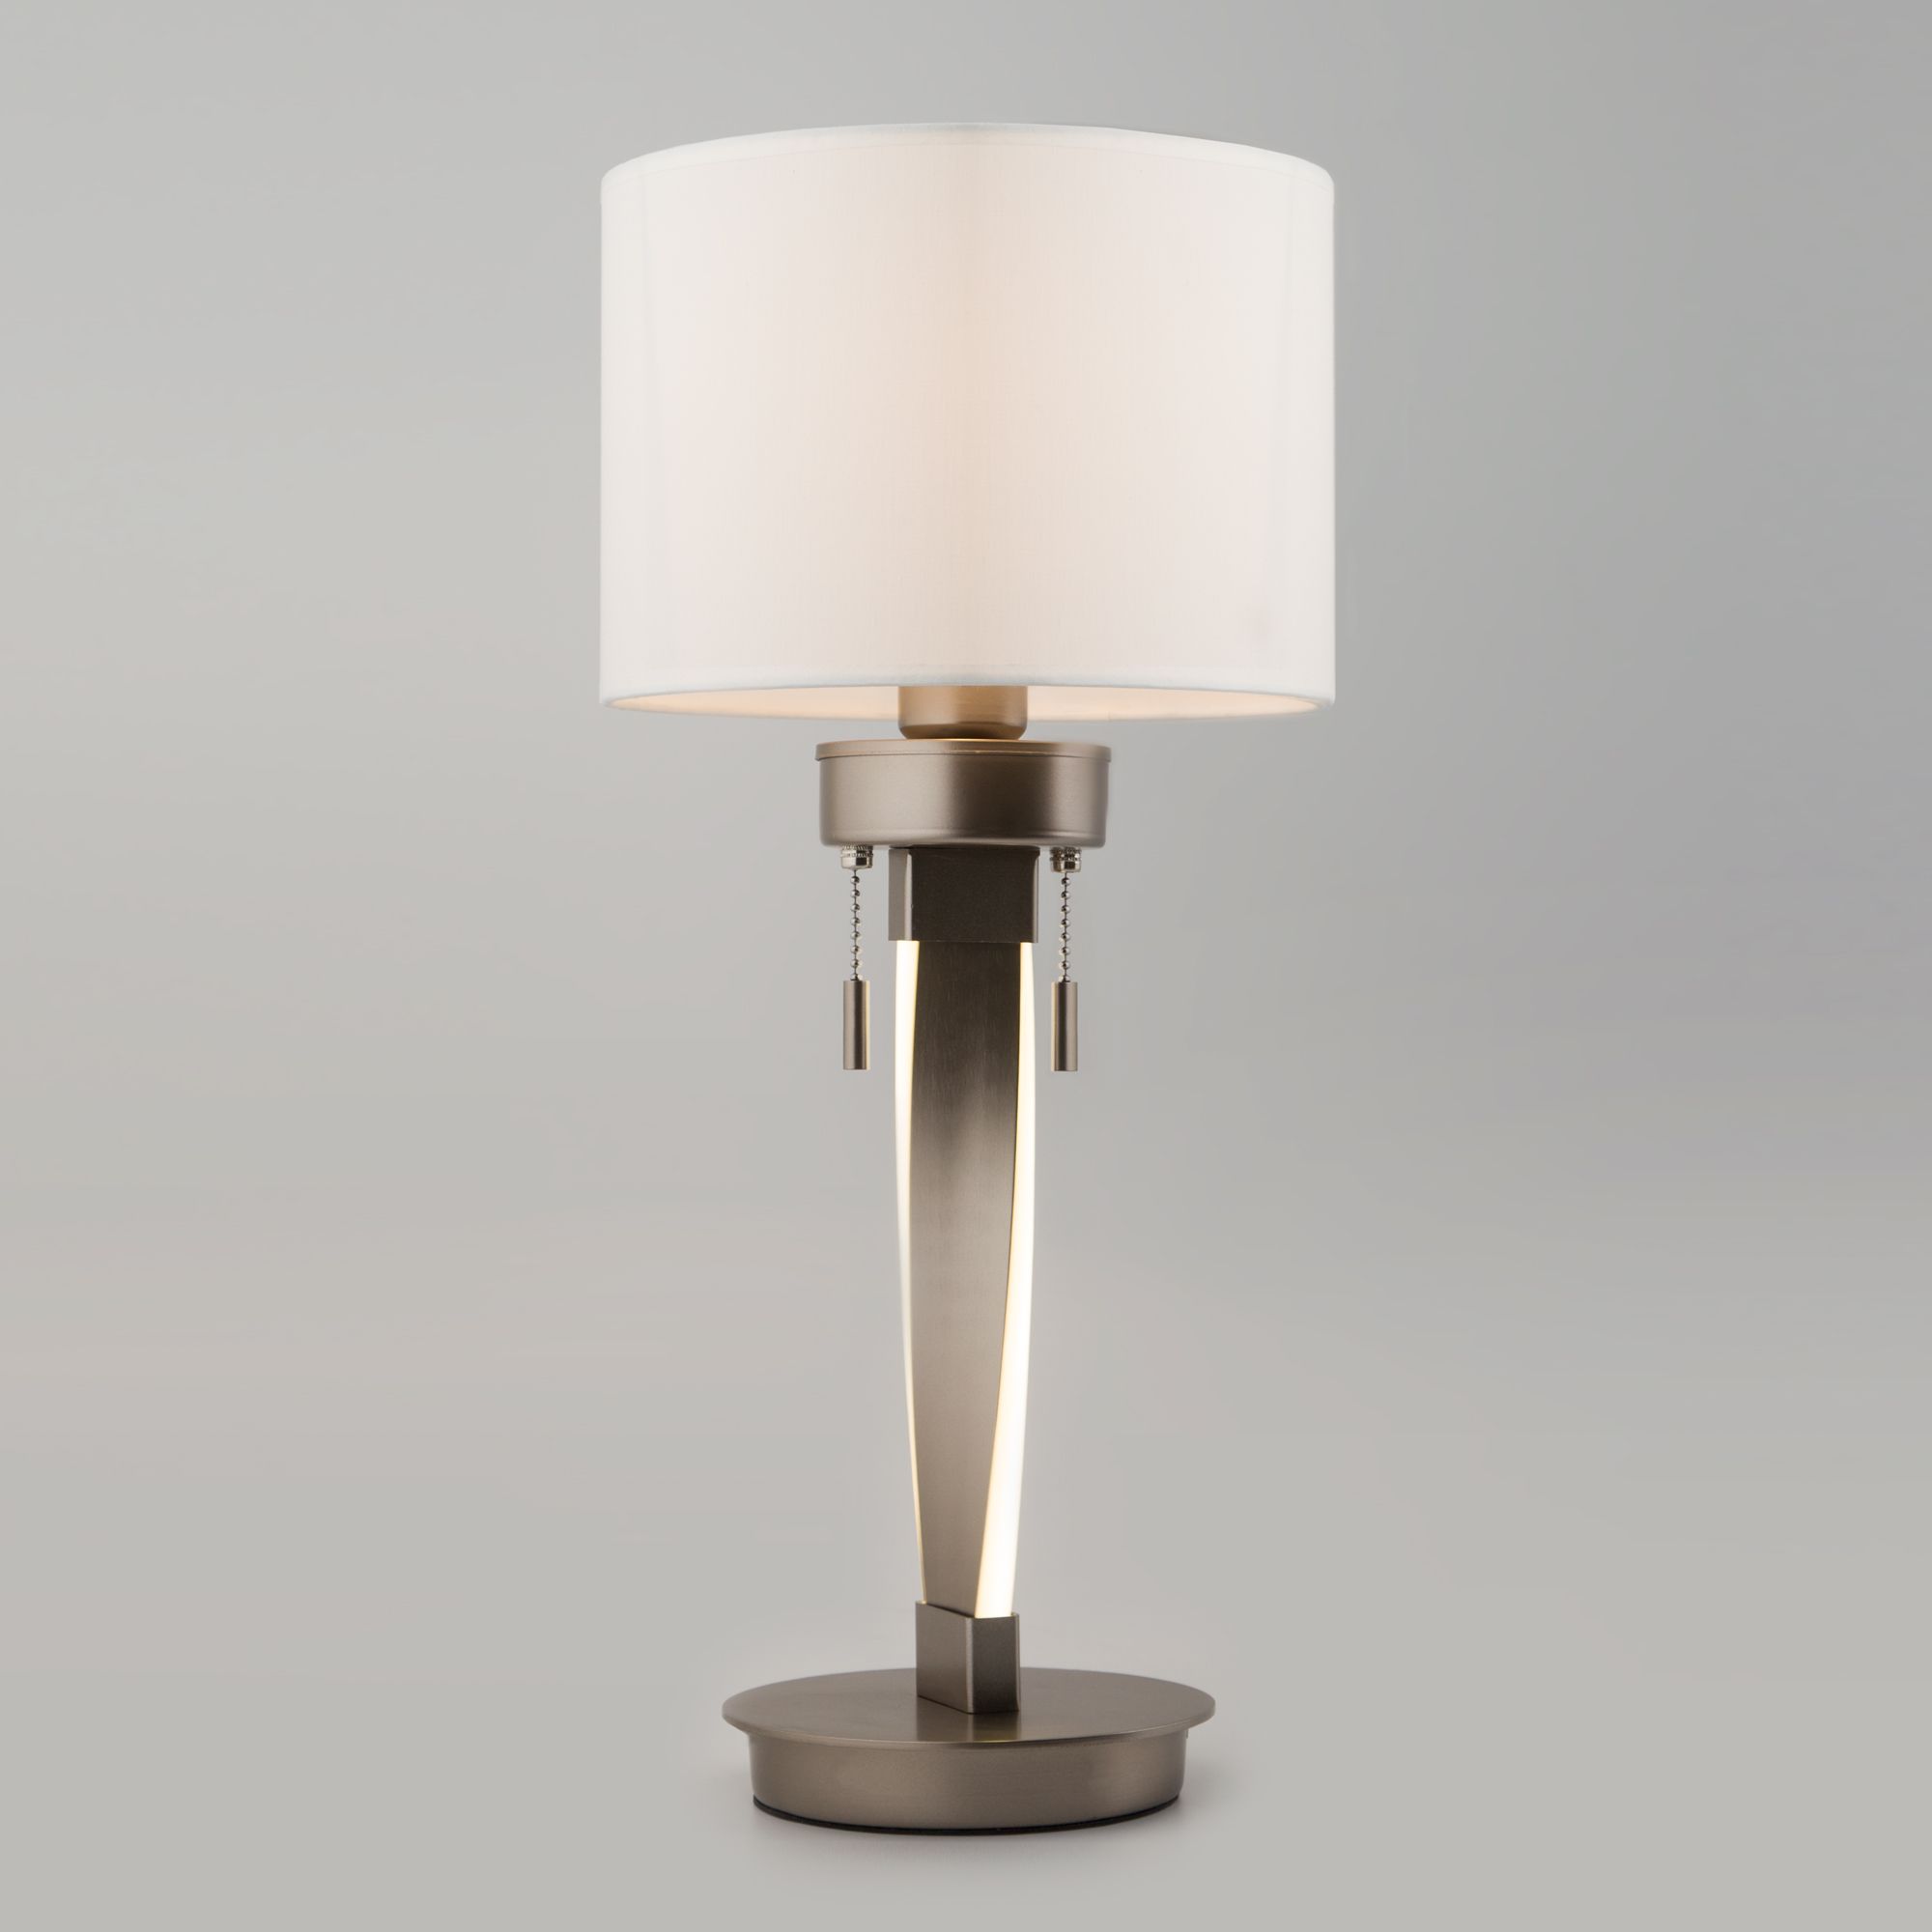 Настольный светодиодный светильник с тканевым абажуром Bogate's Titan 993 белый / никель. Фото 1